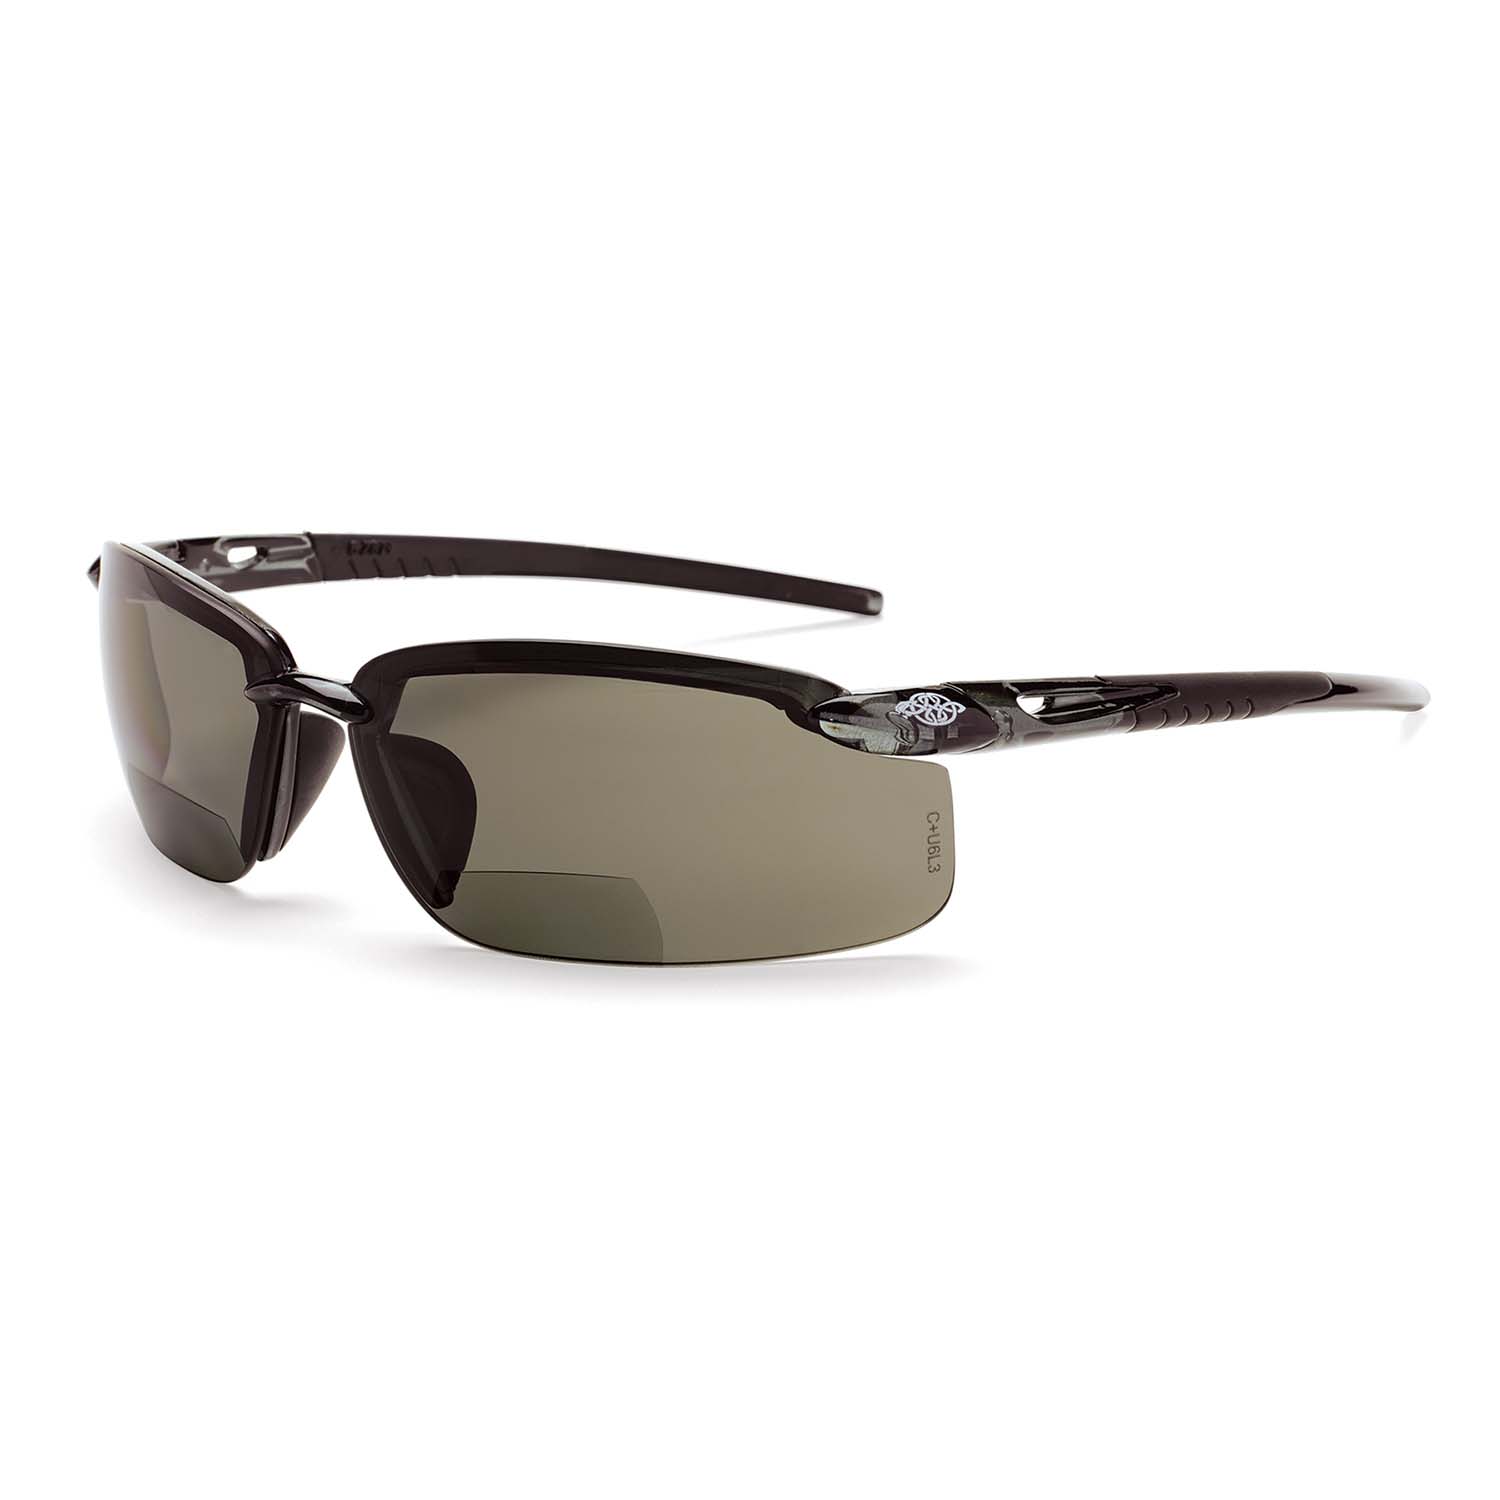 ES5 Bifocal Safety Eyewear - Crystal Black Frame - Polarized Smoke Lens - 1.5 Diopter - Bifocals